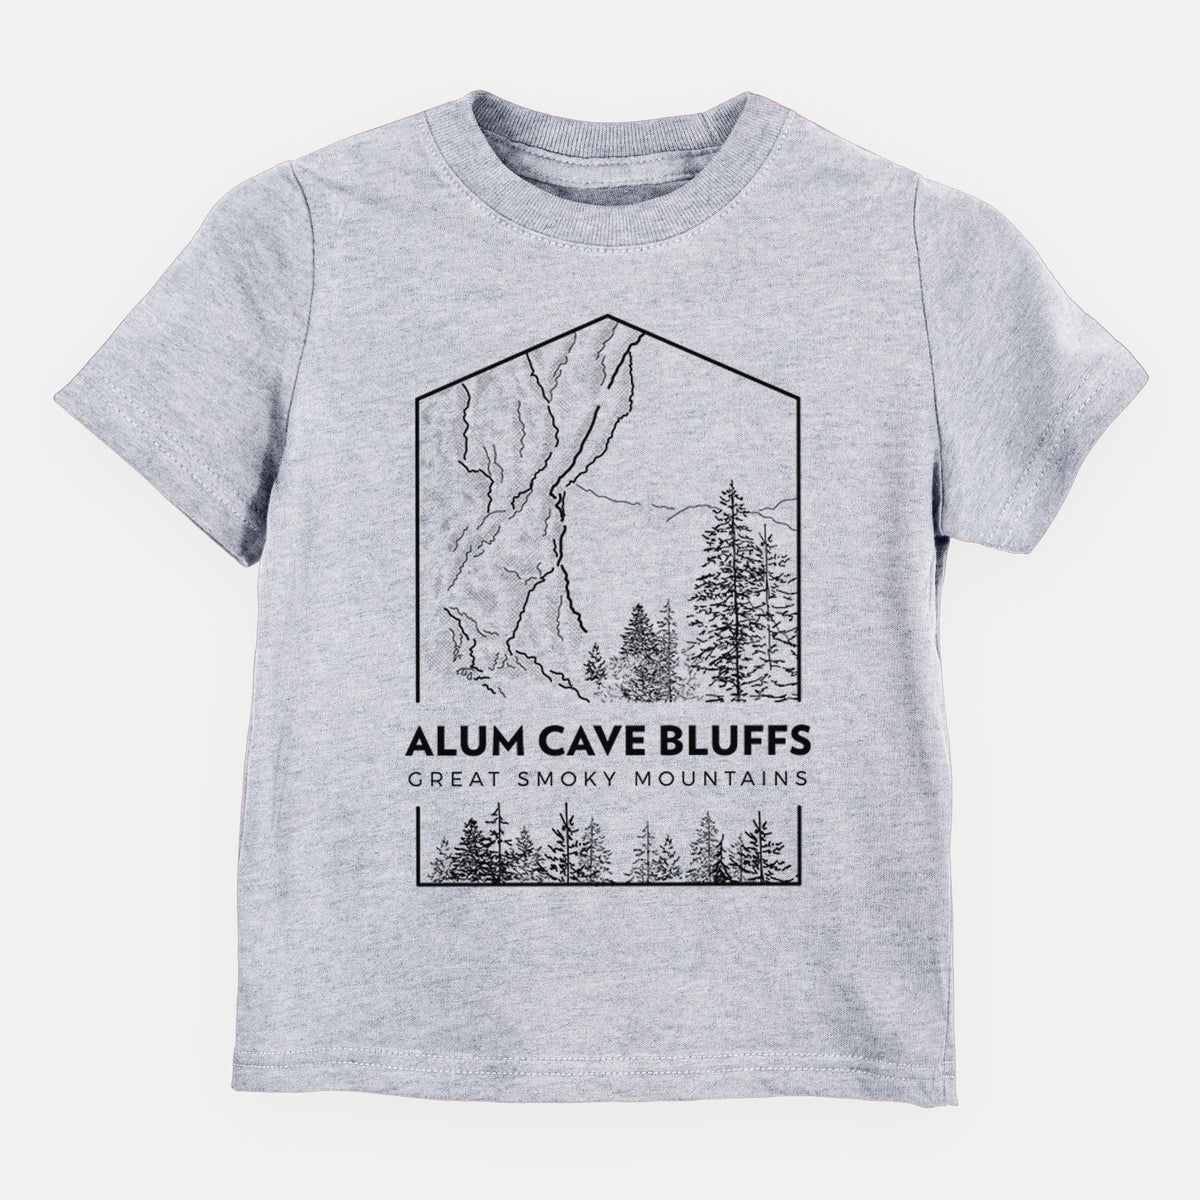 Alum Cave Bluffs - Great Smoky Mountains National Park - Kids Shirt